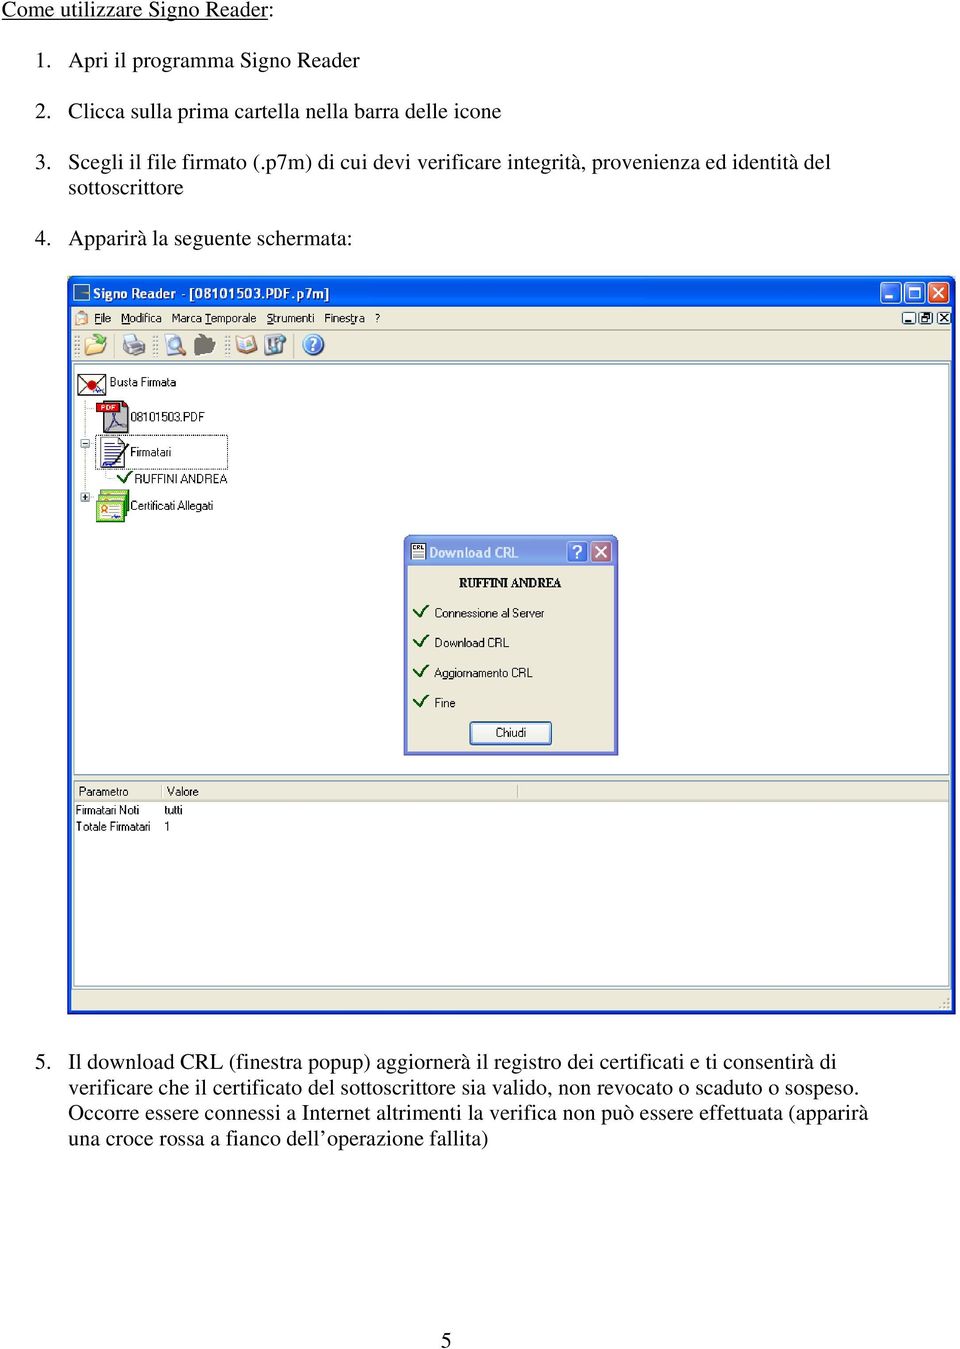 Il download CRL (finestra popup) aggiornerà il registro dei certificati e ti consentirà di verificare che il certificato del sottoscrittore sia